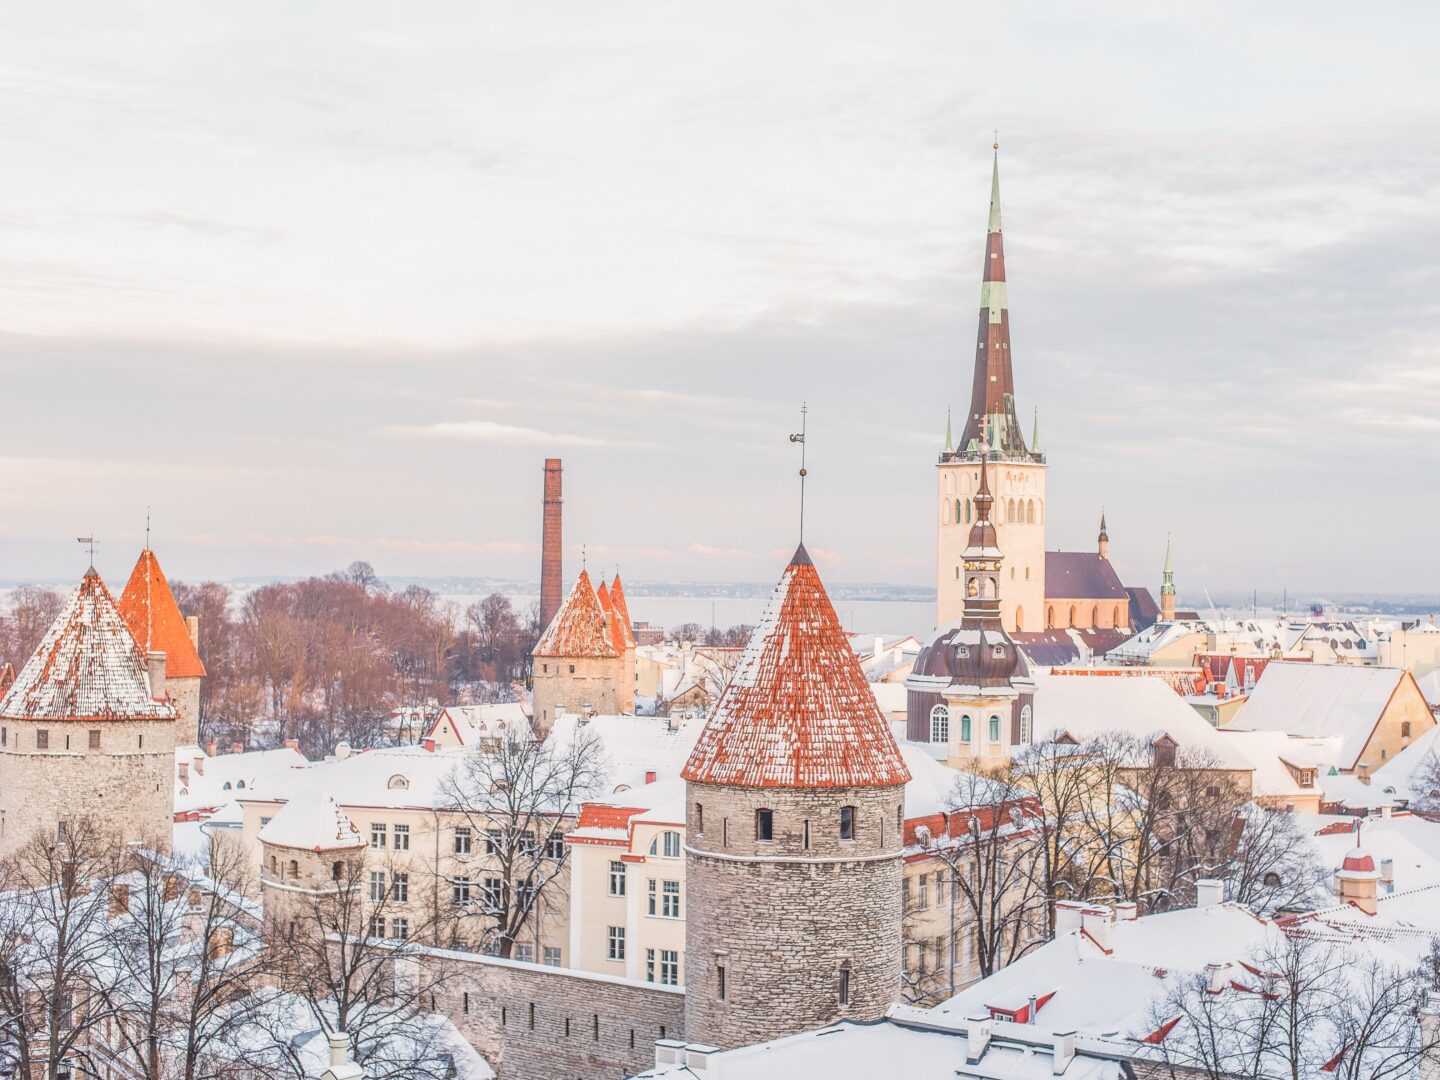 Stedentrip Tallinn: tips voor een weekendje Tallinn